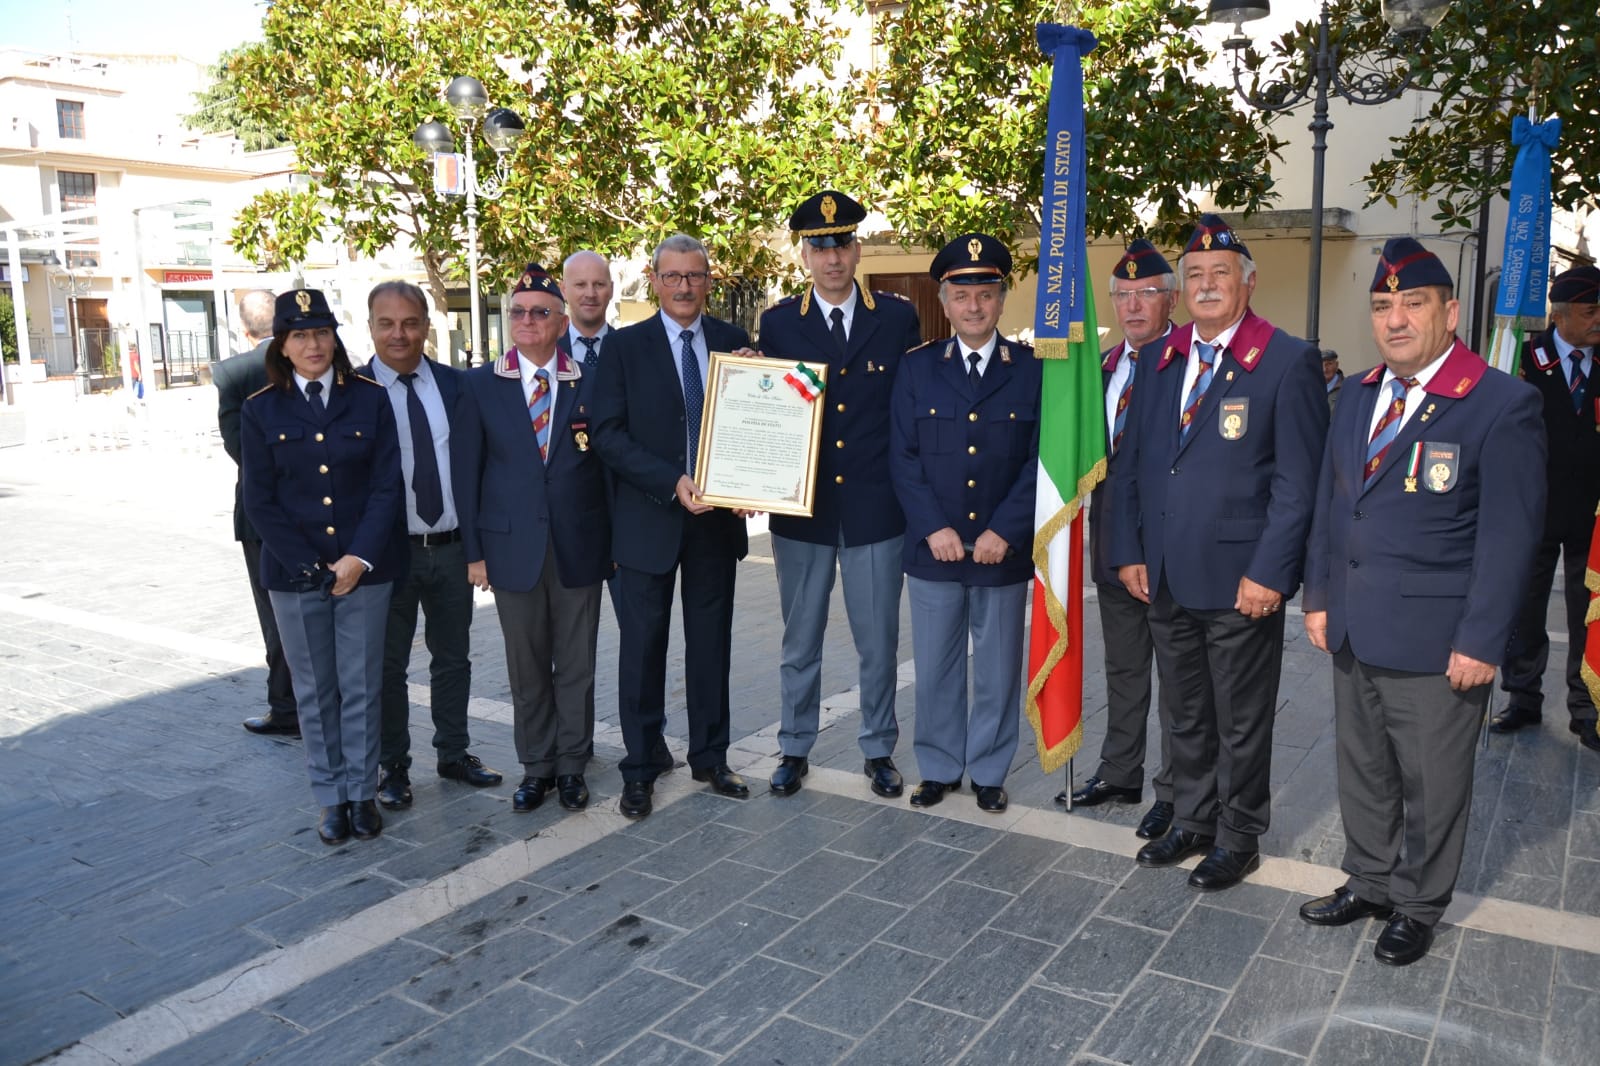 Il Comune di San Salvo conferisce la cittadinanza onoraria alla Polizia di Stato, all’Arma dei Carabinieri ed alla Guardia di Finanza